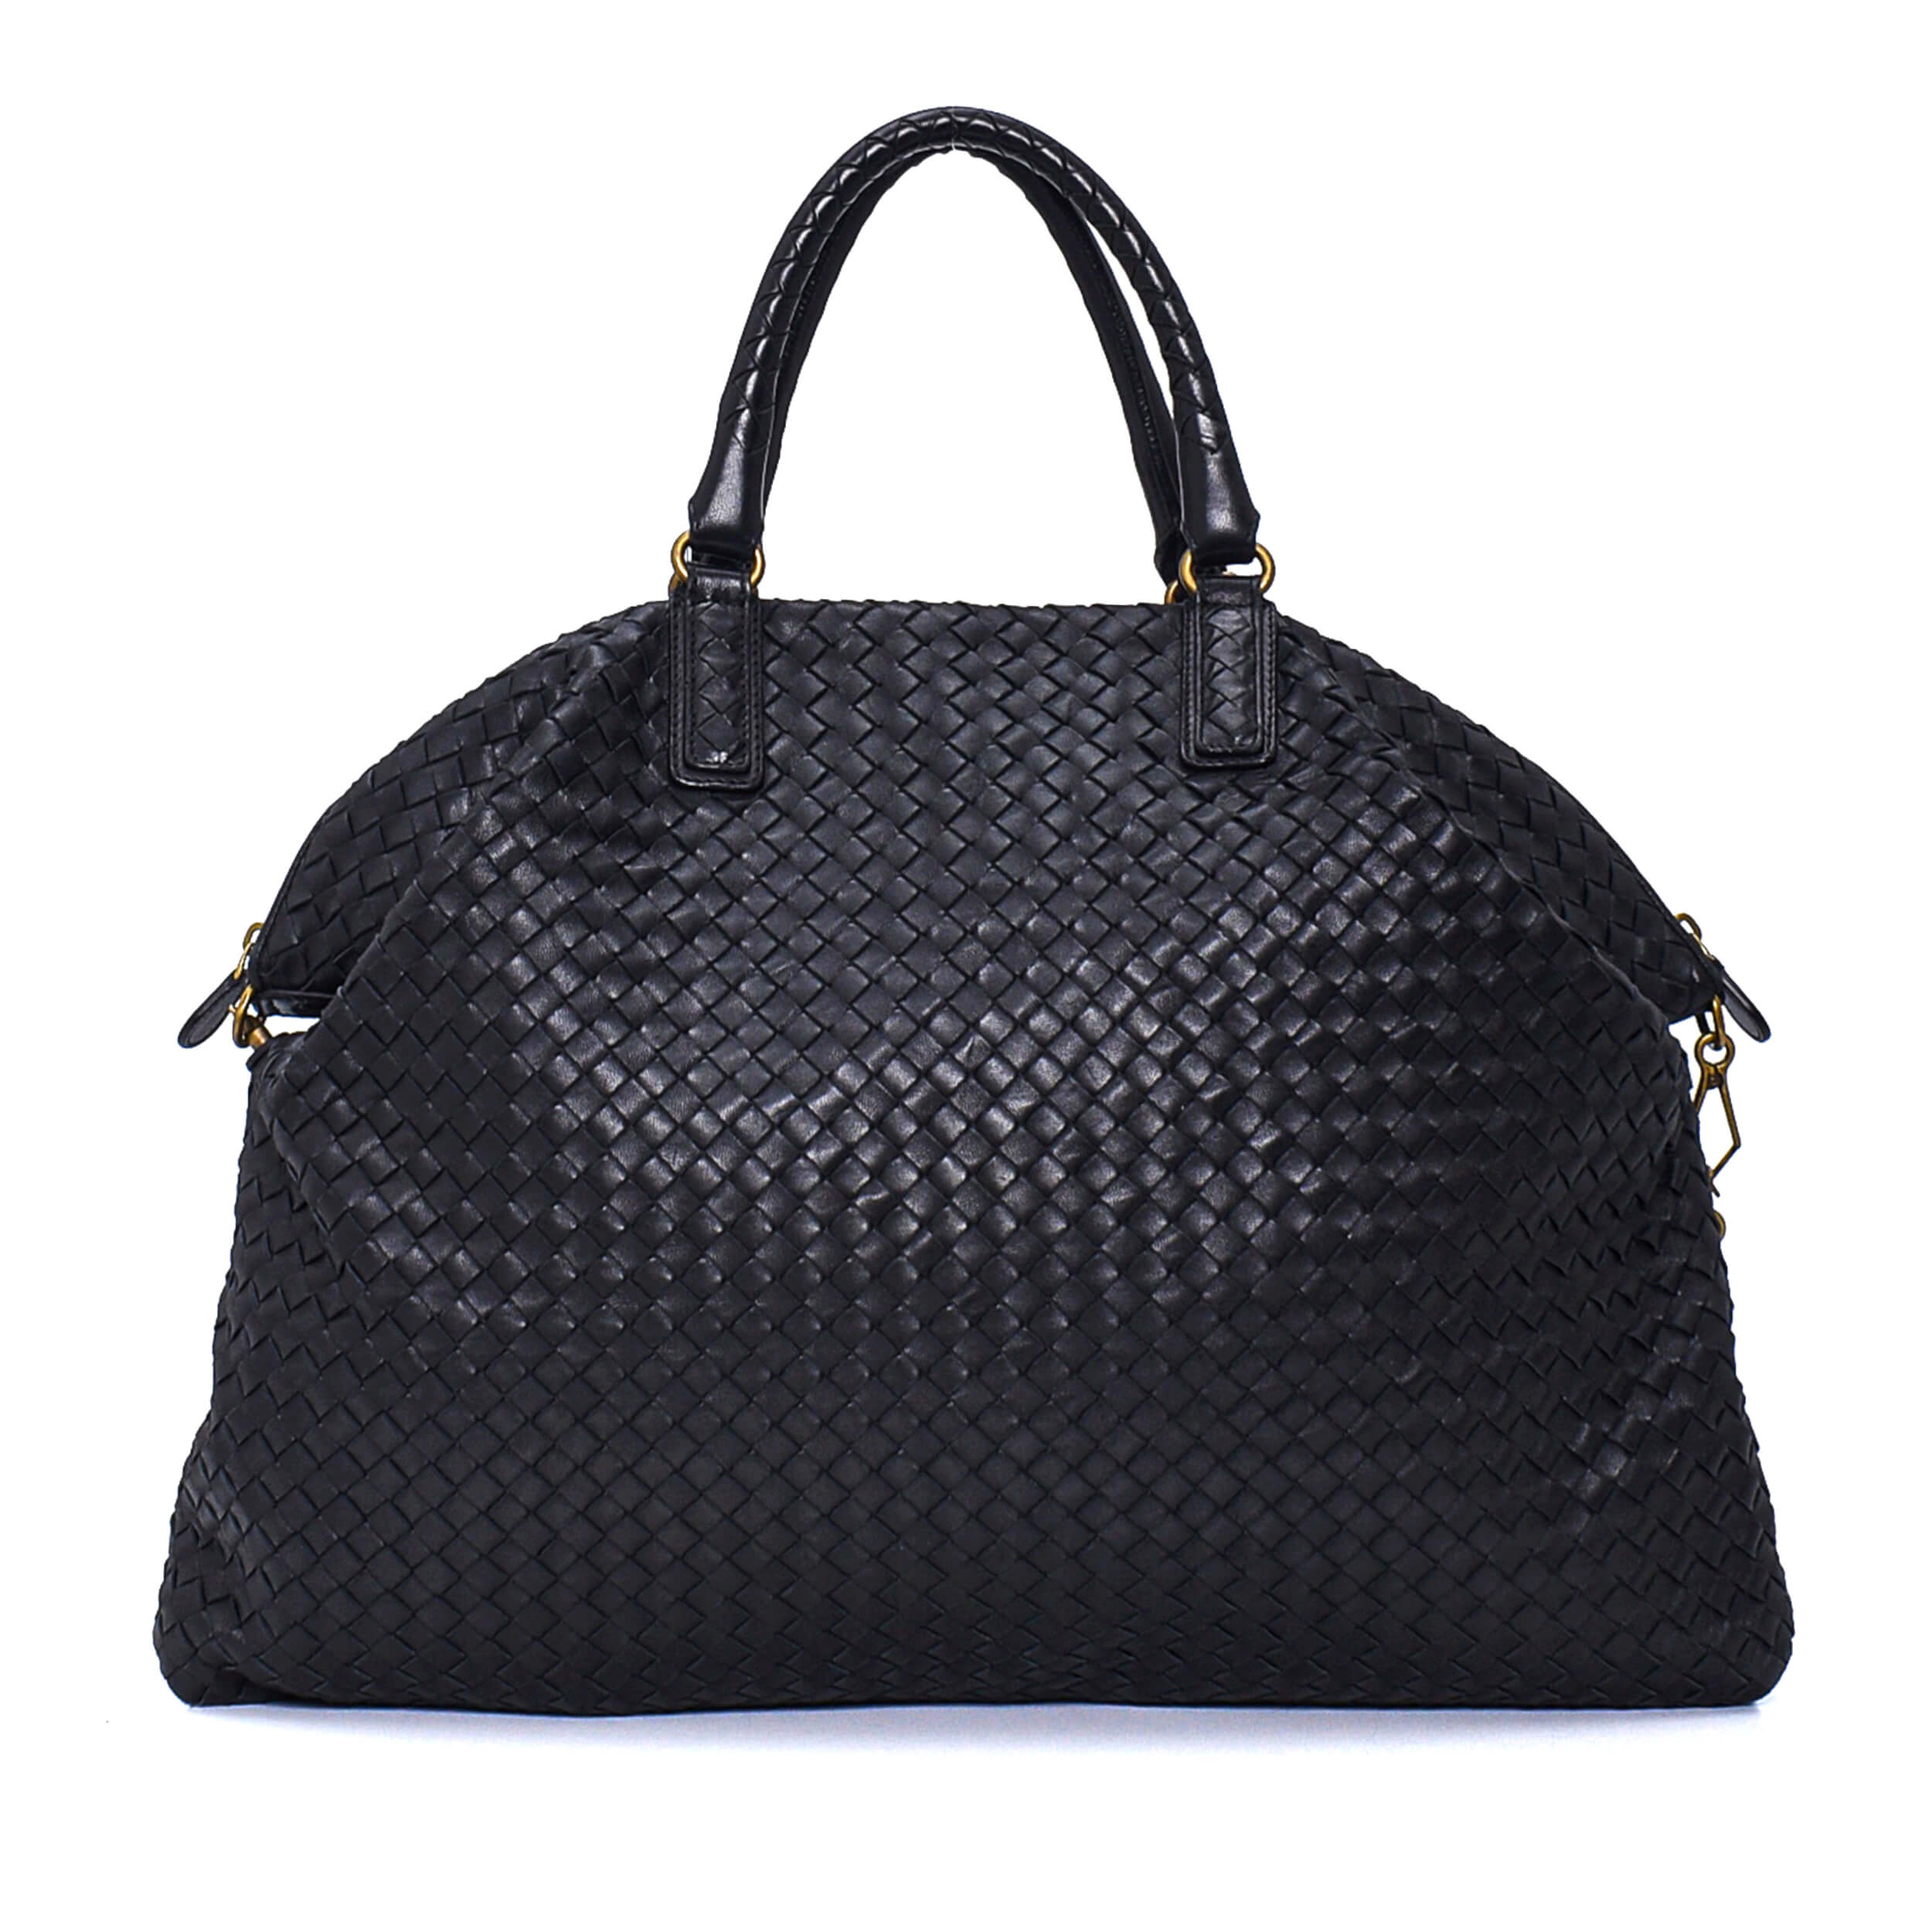 Bottega Veneta - Black Intreccıato Leather Large Hobo Bag